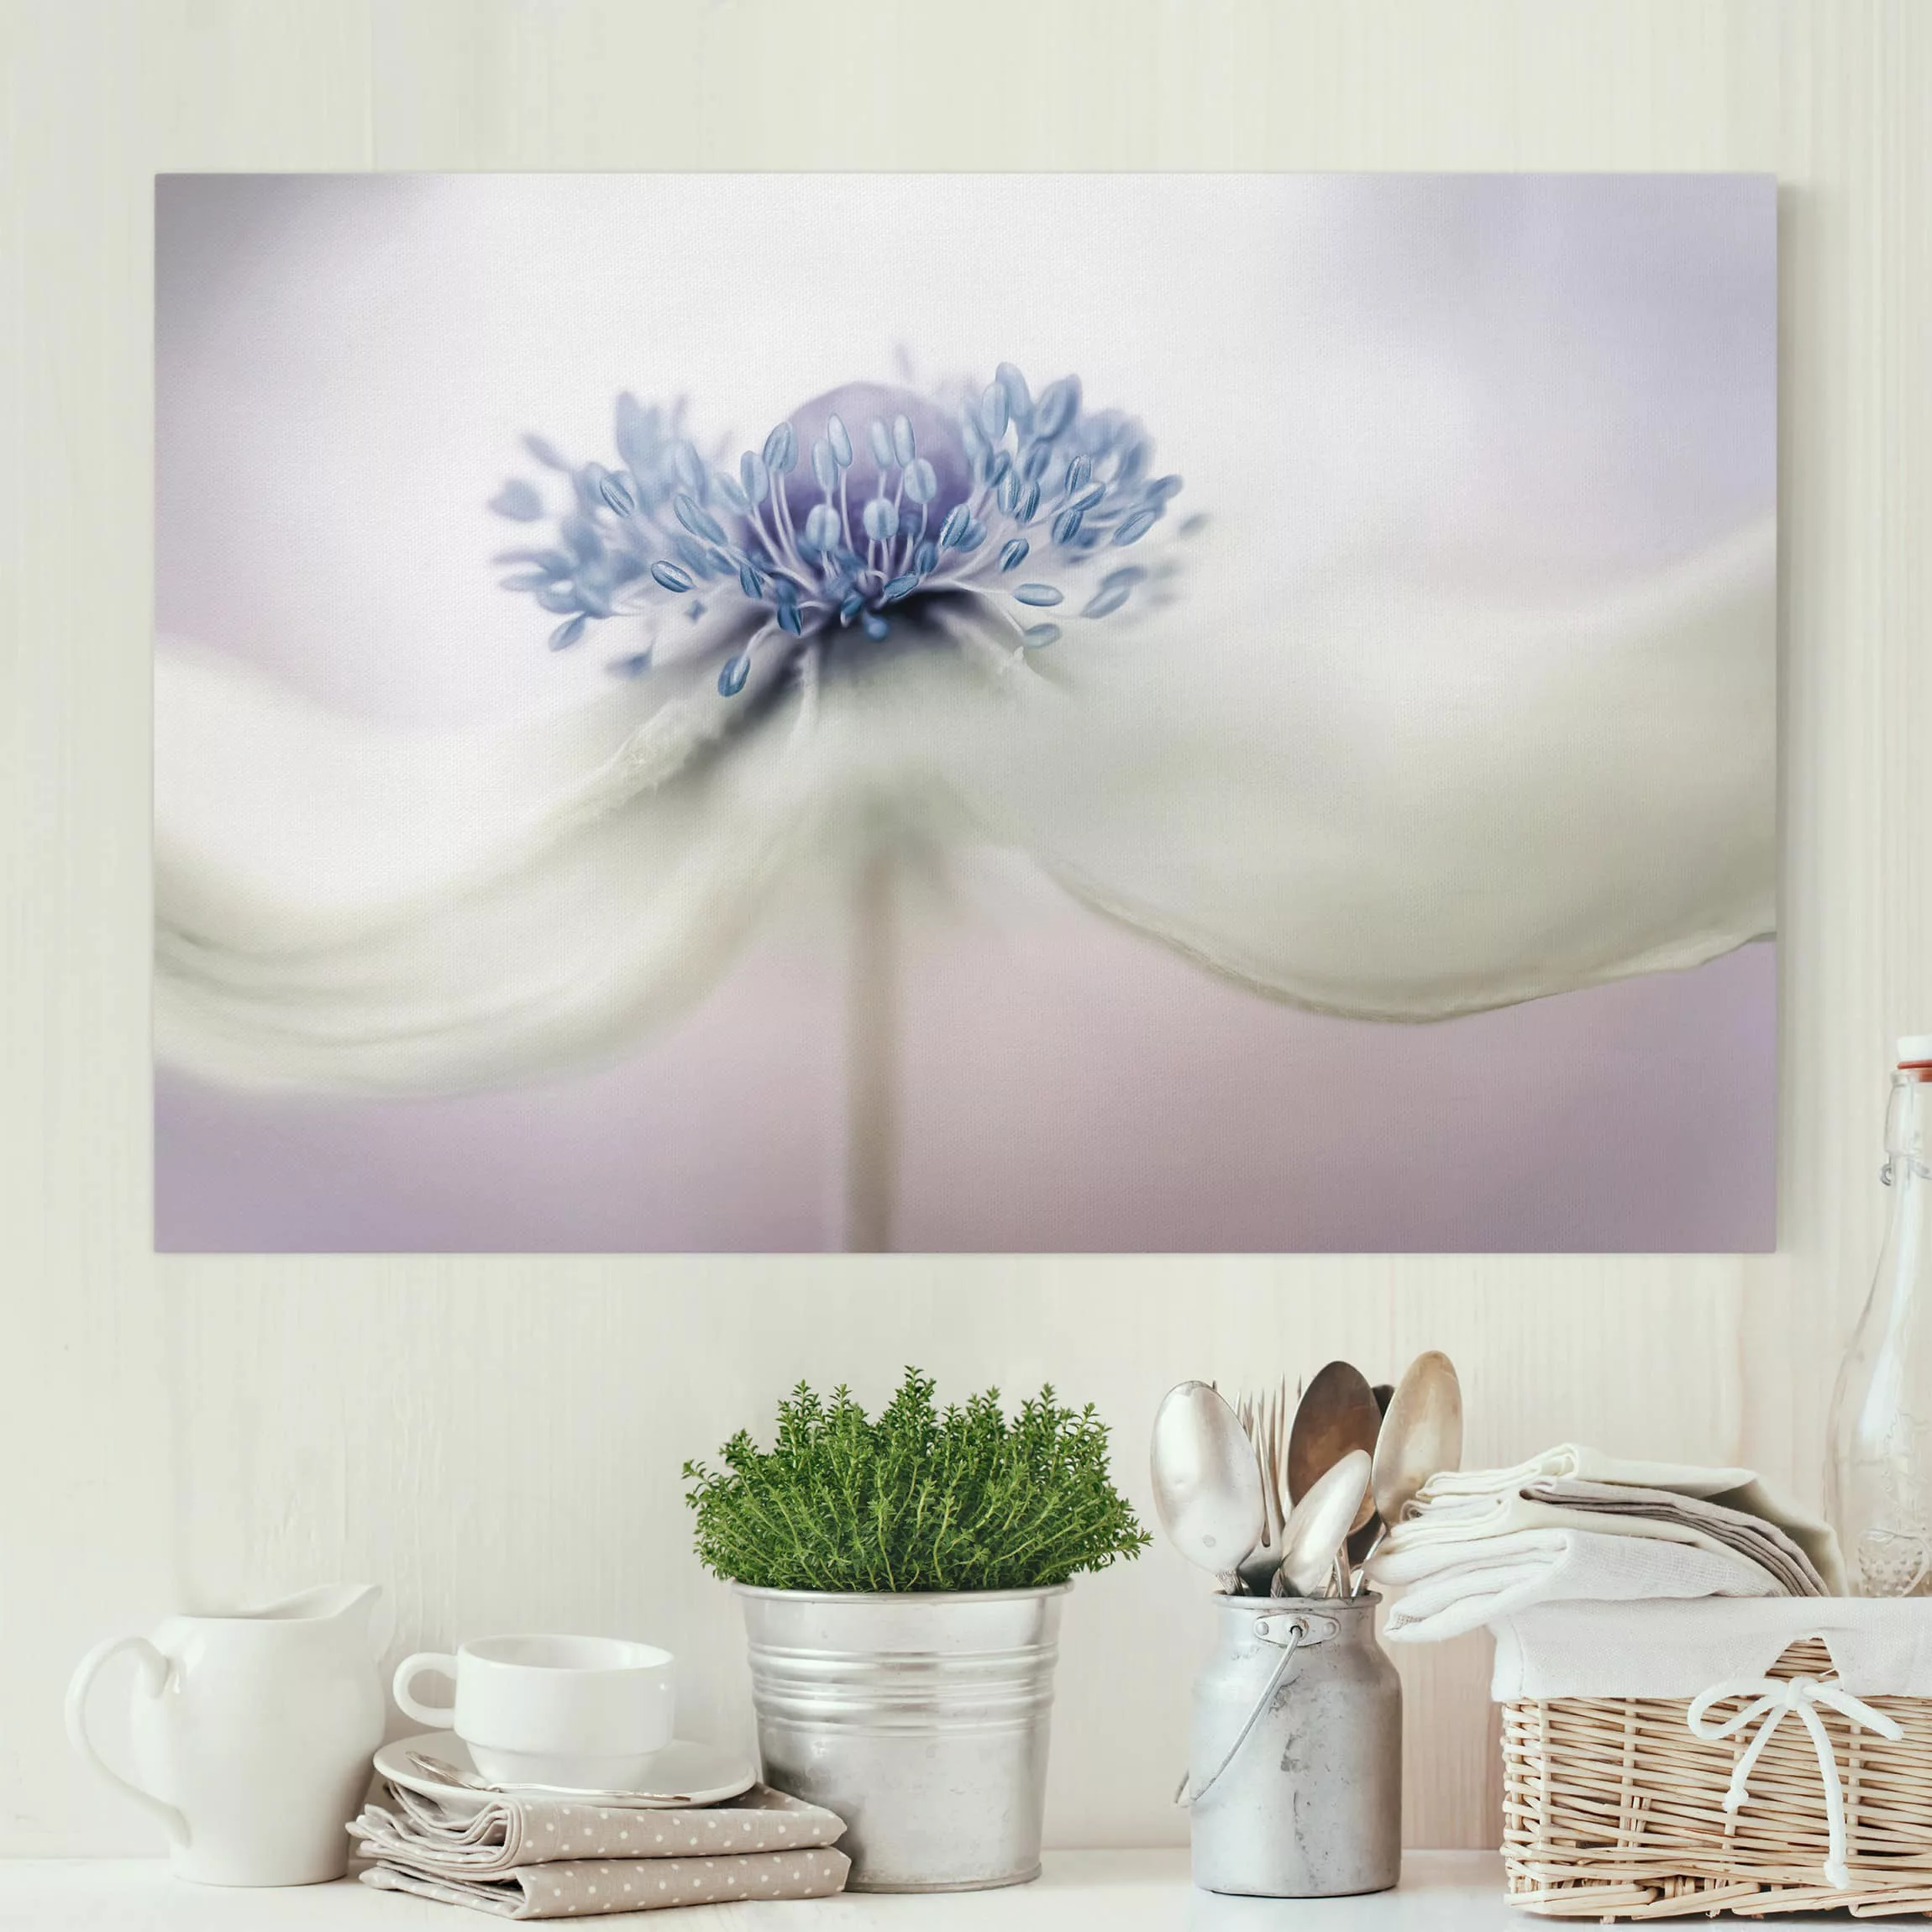 Leinwandbild Blumen - Querformat Anemone in Violett günstig online kaufen